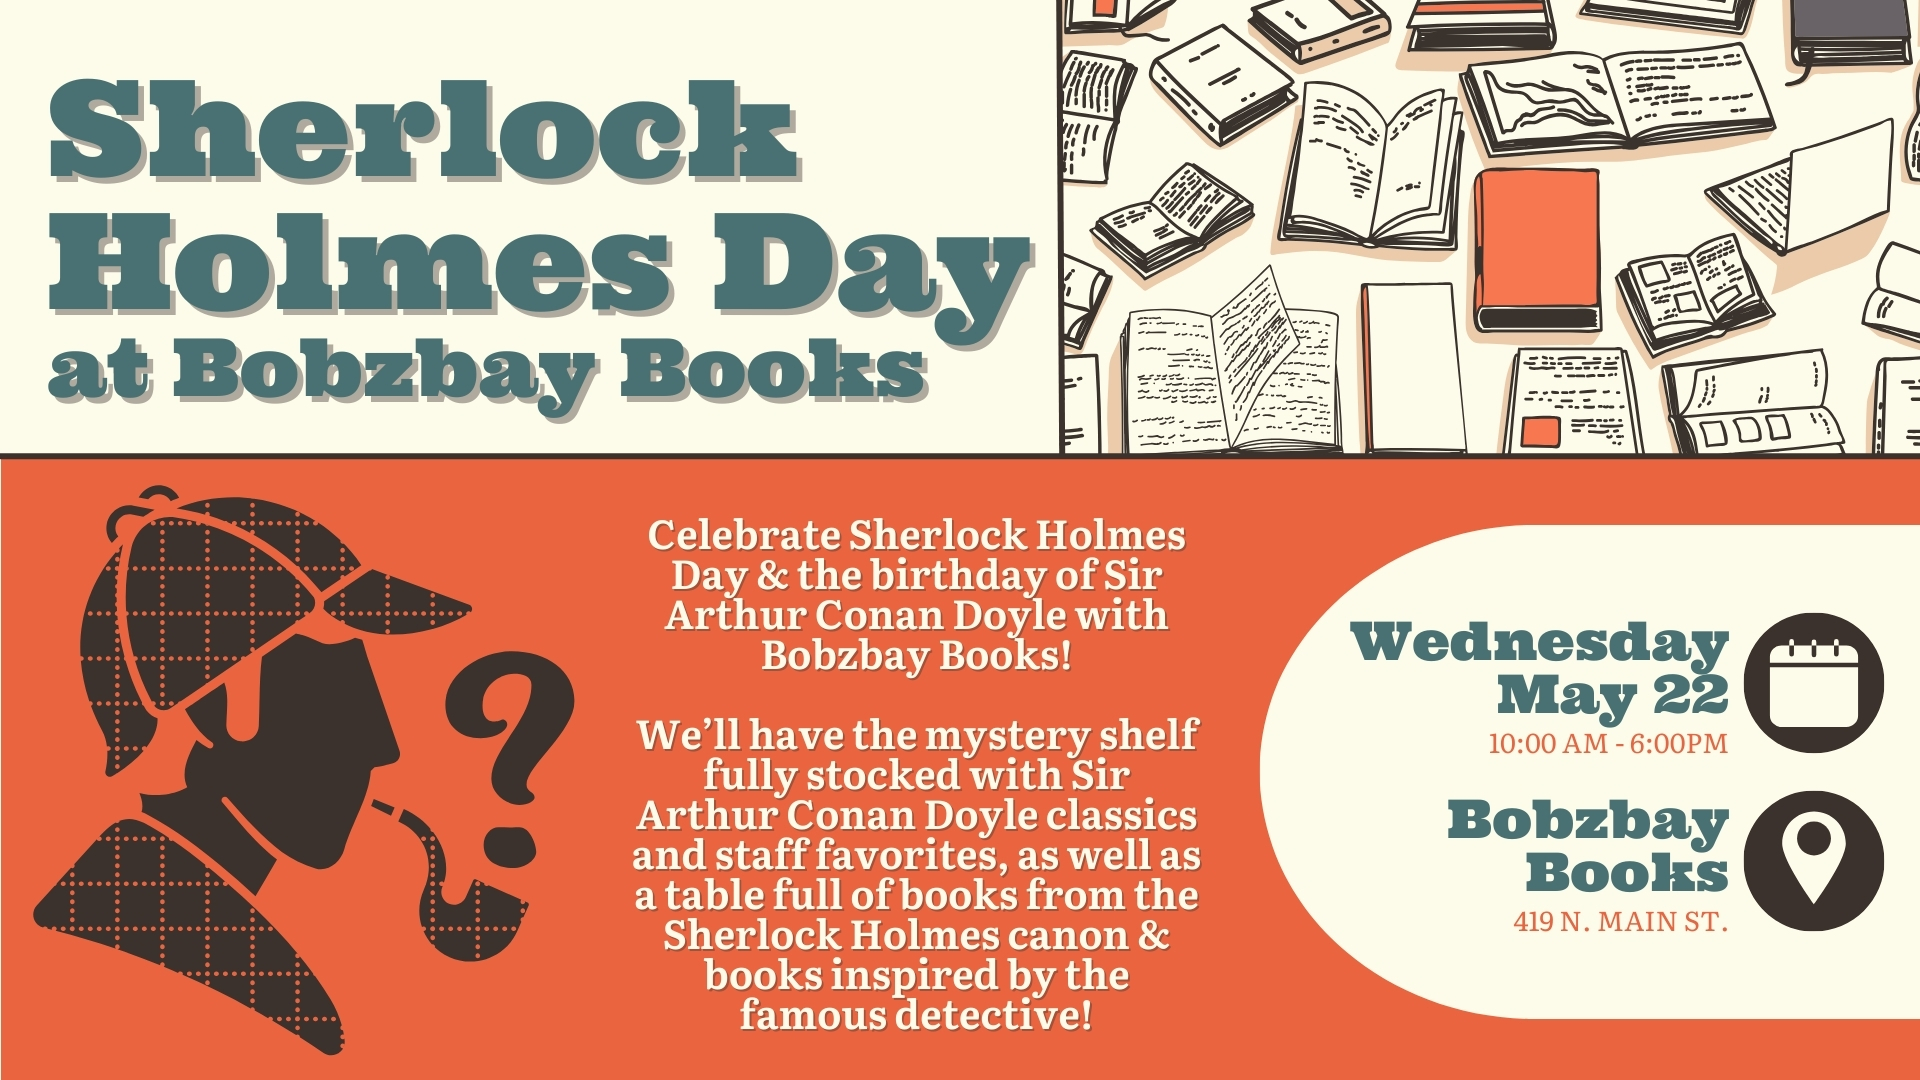 Sherlock Holmes Day at Bobzbay Books